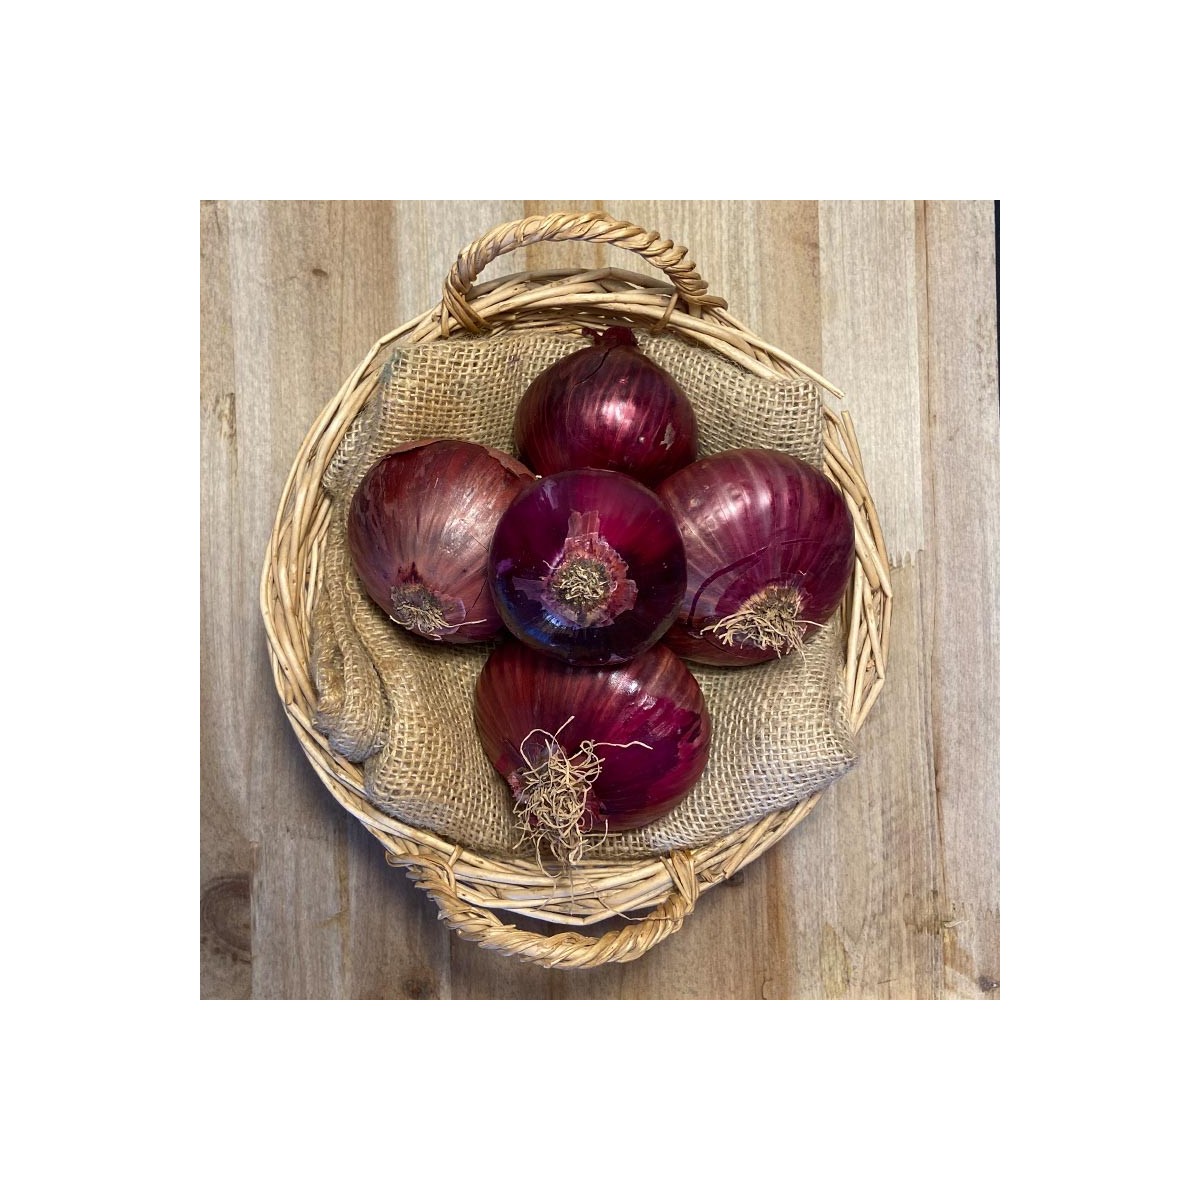 Cebollas Rojas - - Patatas, Cebollas y Ajos -1- Lo mejor de la fruta